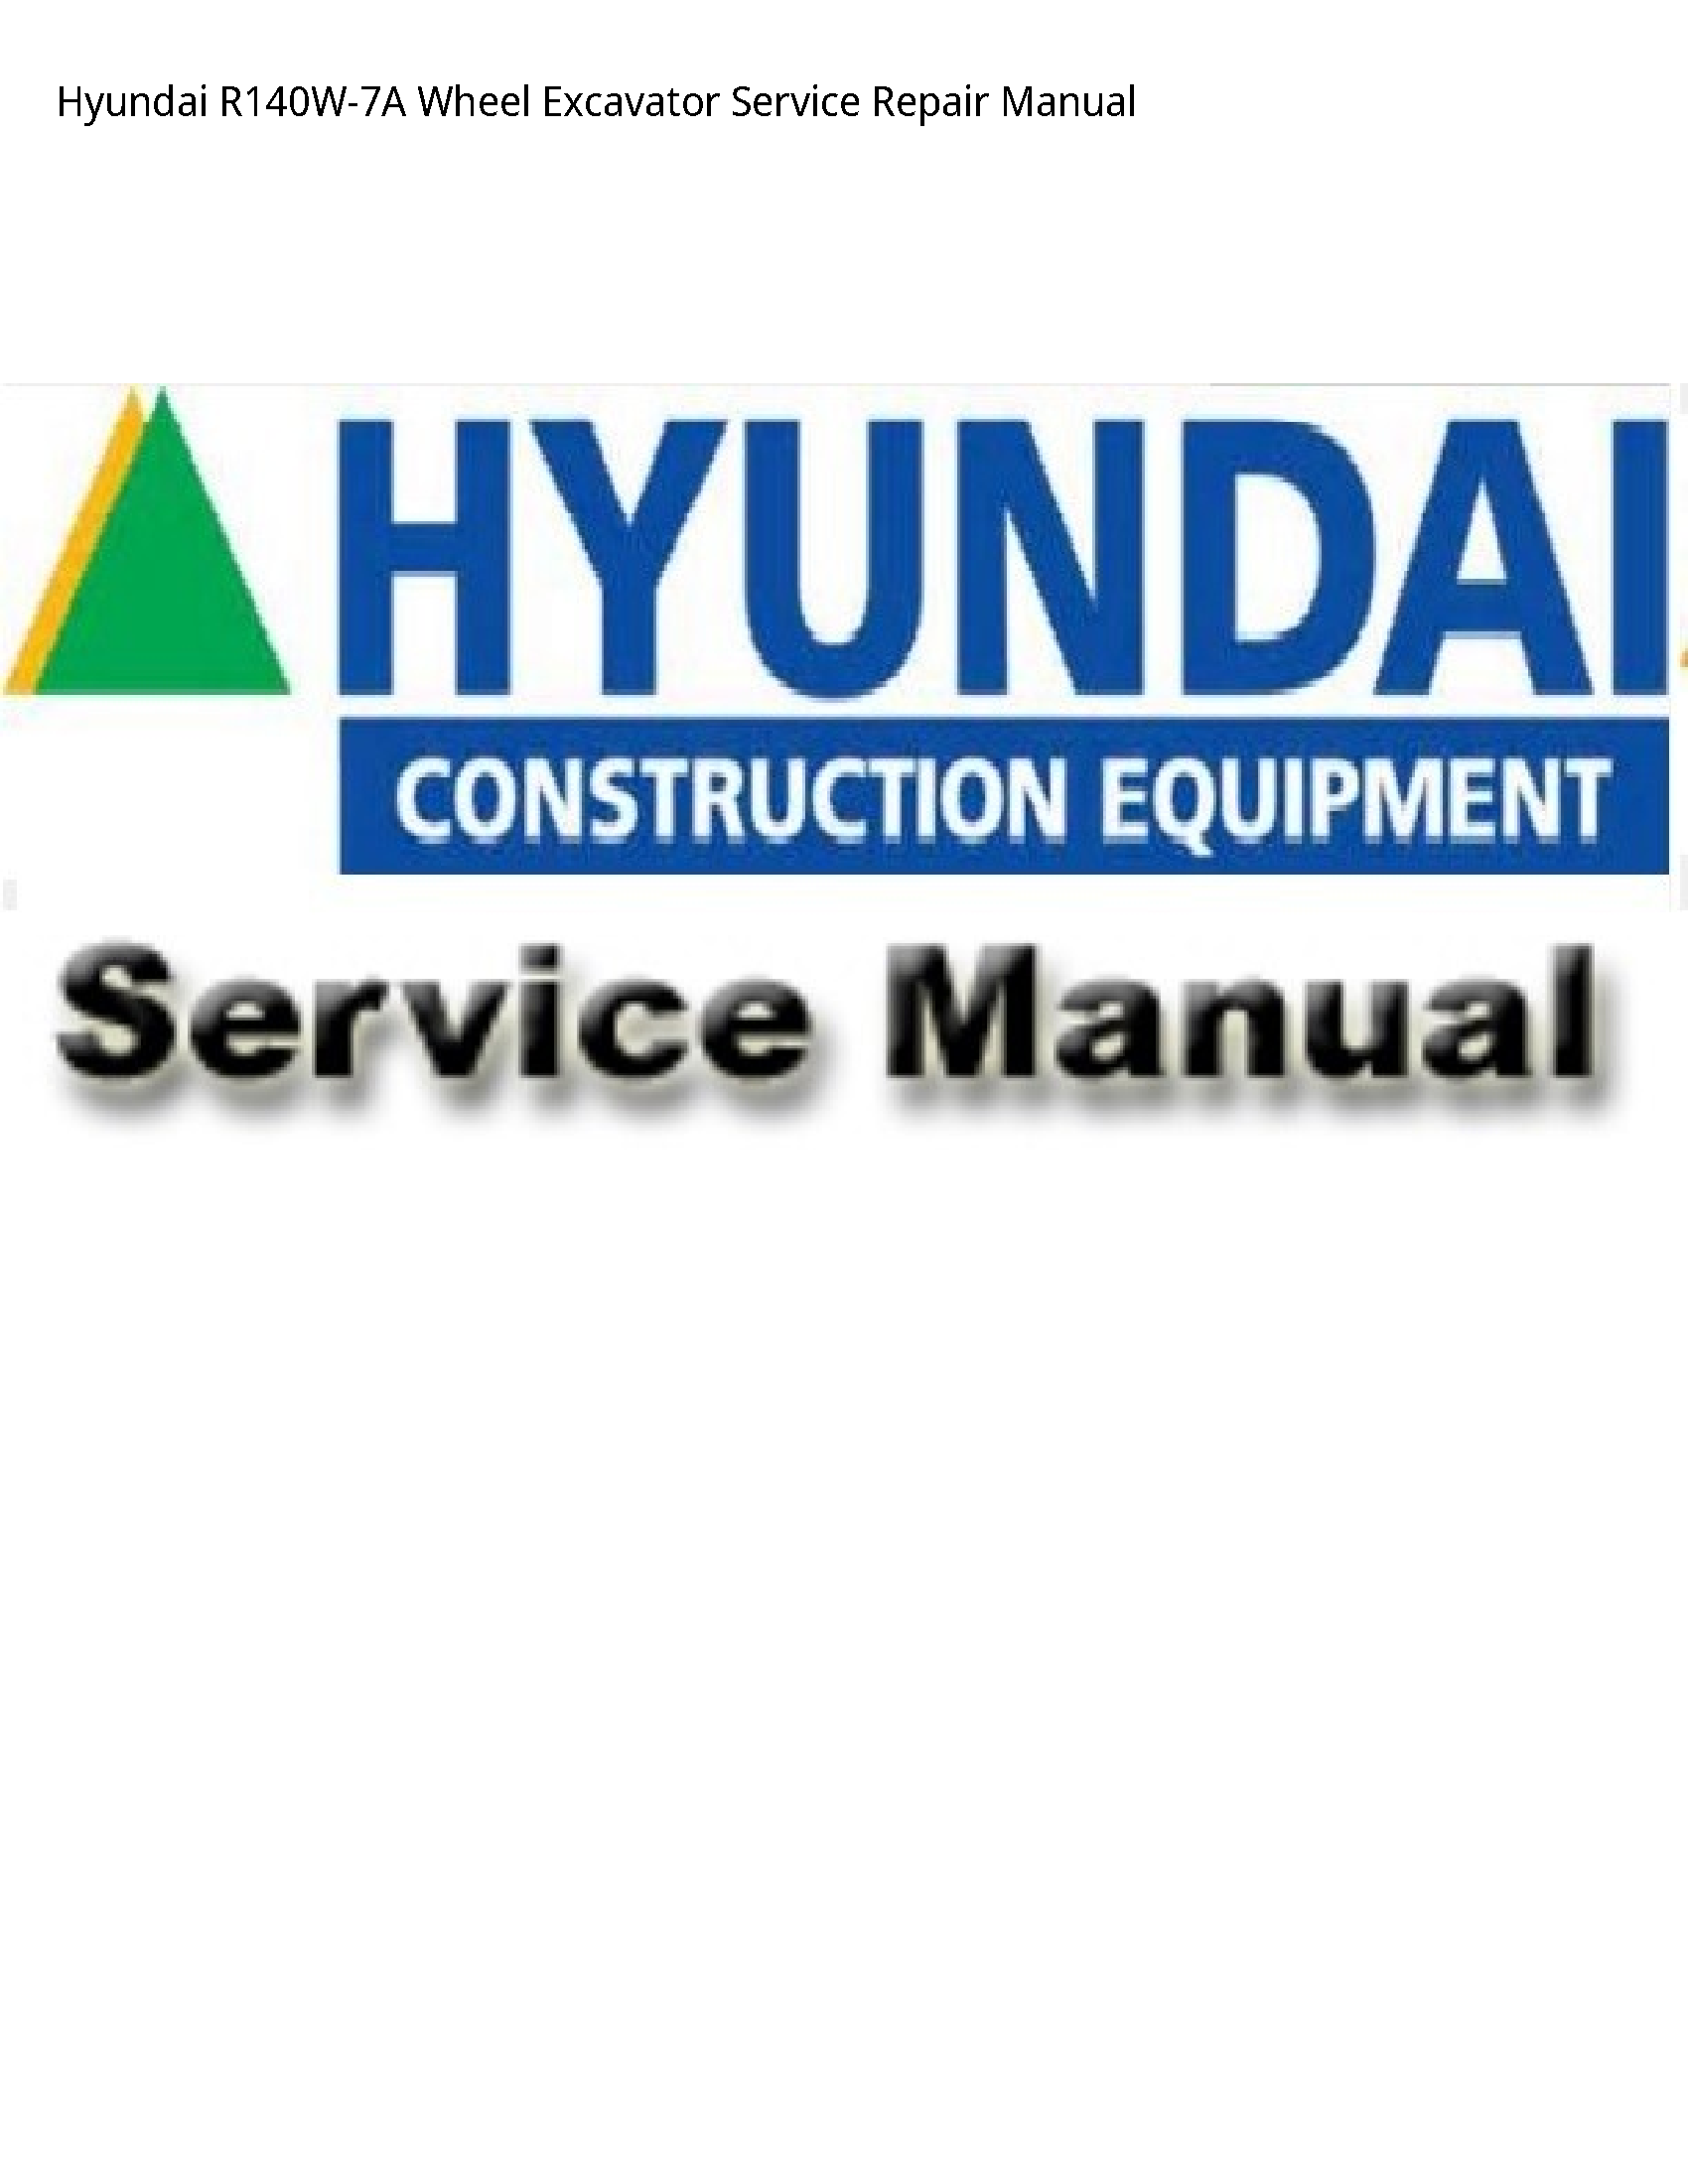 Hyundai R140W-7A Wheel Excavator manual